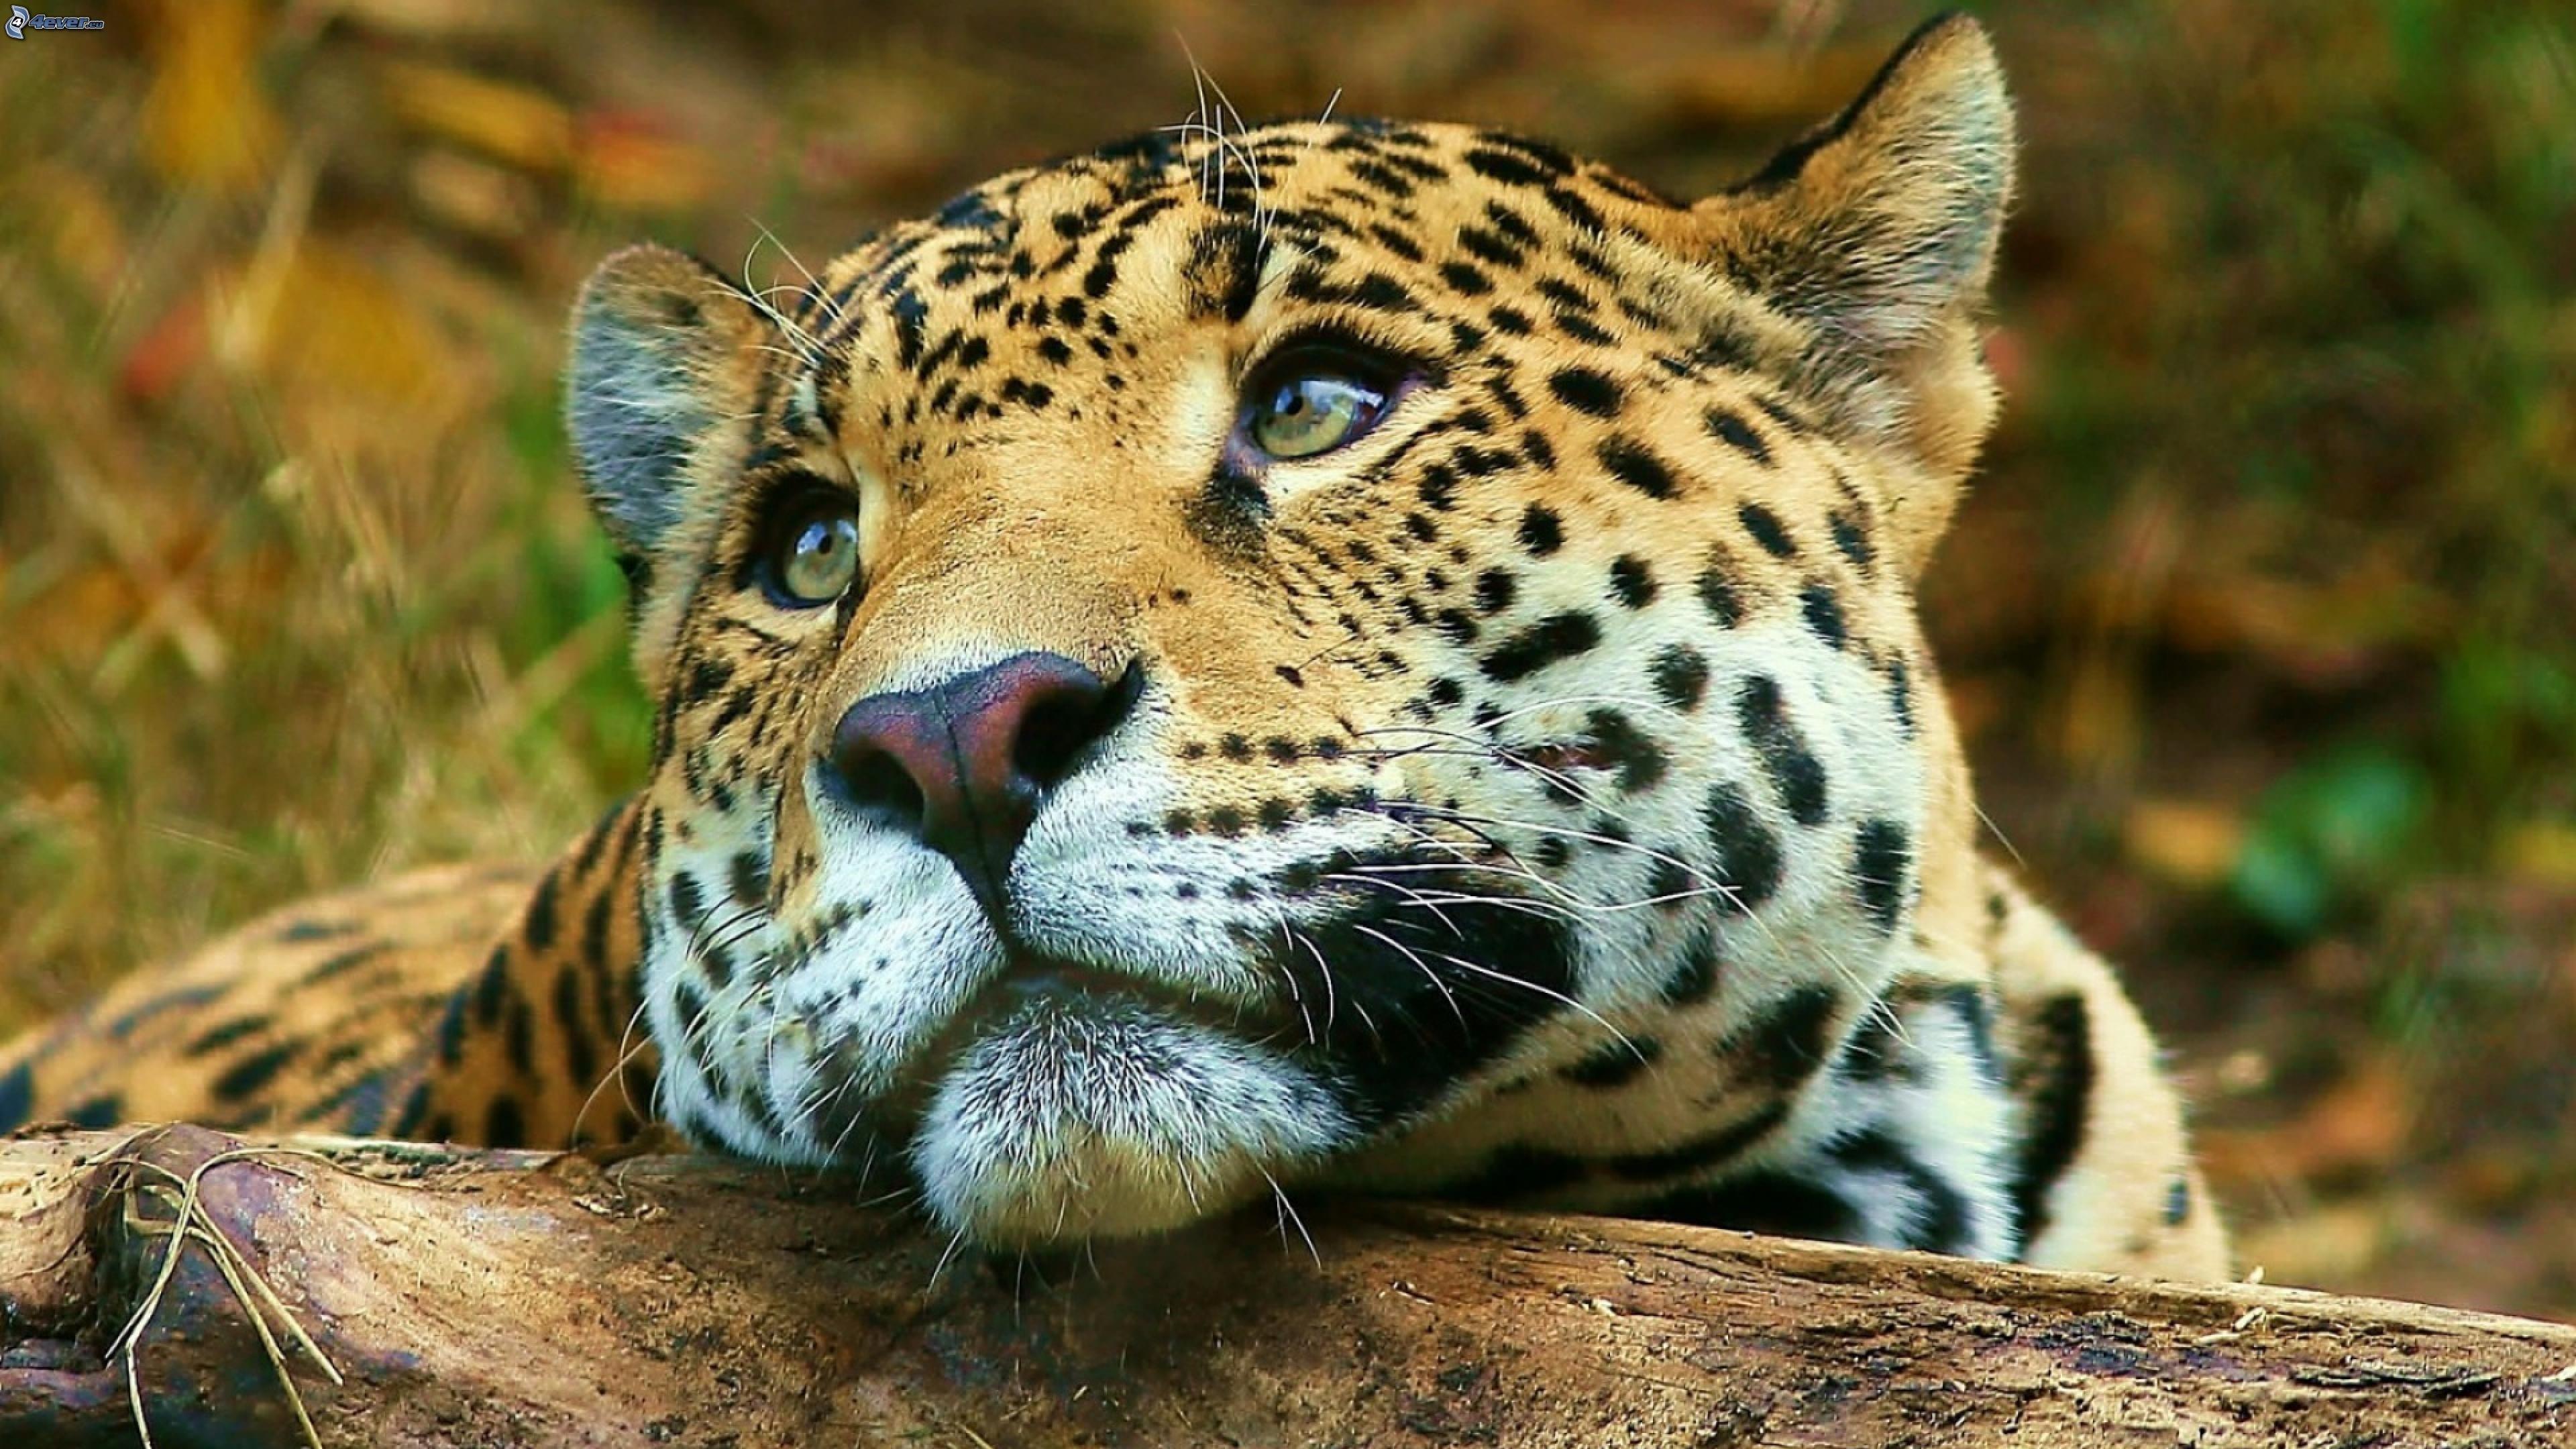 Jaguar Big Cute Wild Cat Desktop Hd Wallpaper For Mobile Phones Tablet